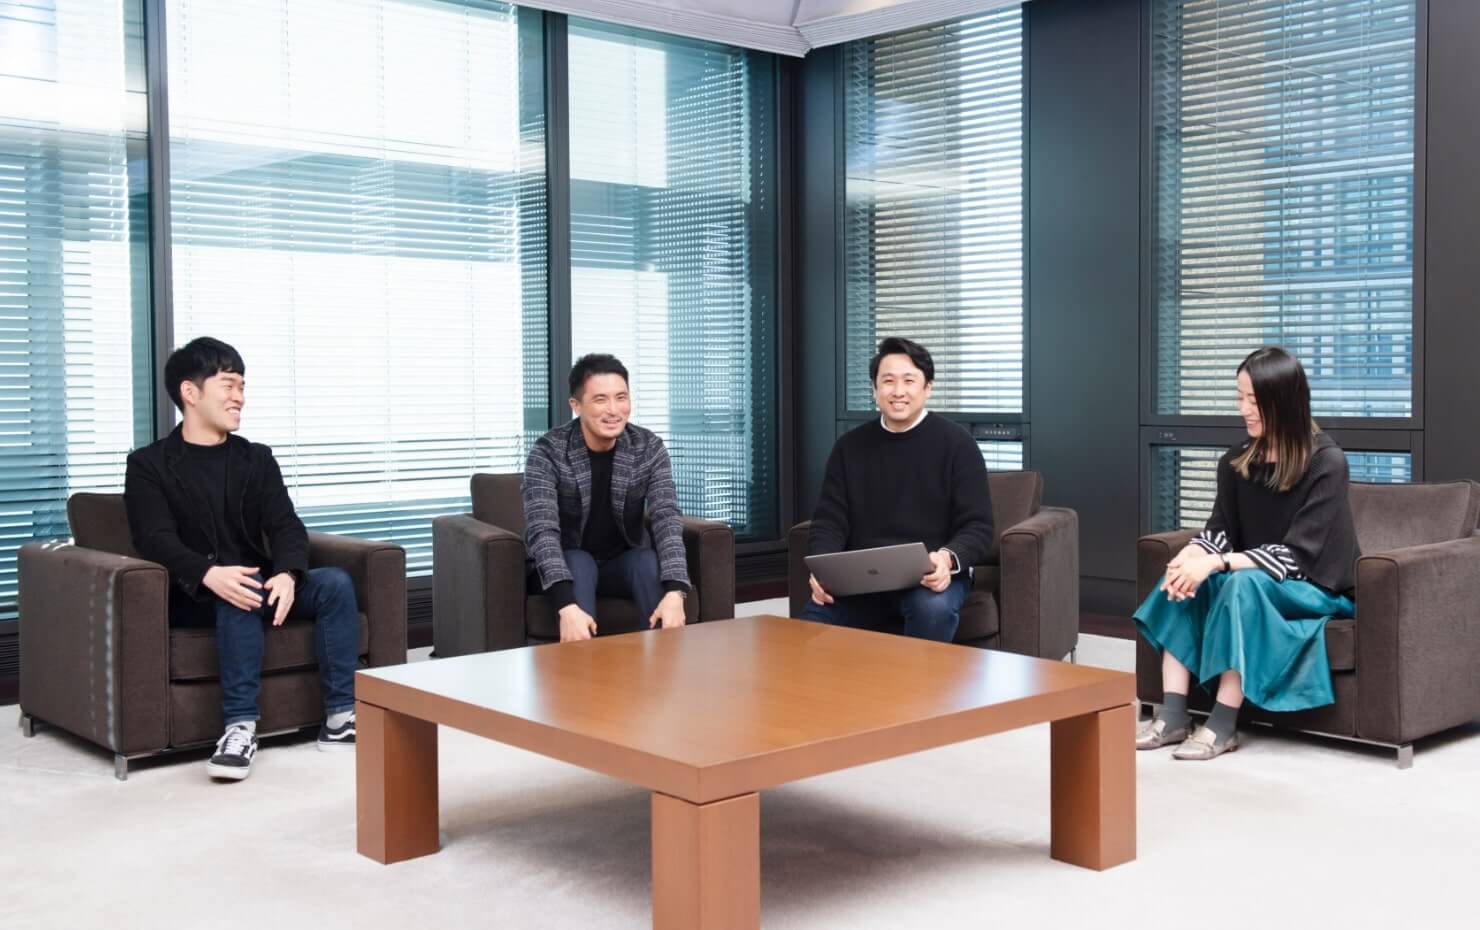 SMBCさまオフィスでのインタビュー中の写真。向かって左からSMBC米本氏、コンセント大崎、SMBC金澤氏、コンセント石井の順番で座っている。